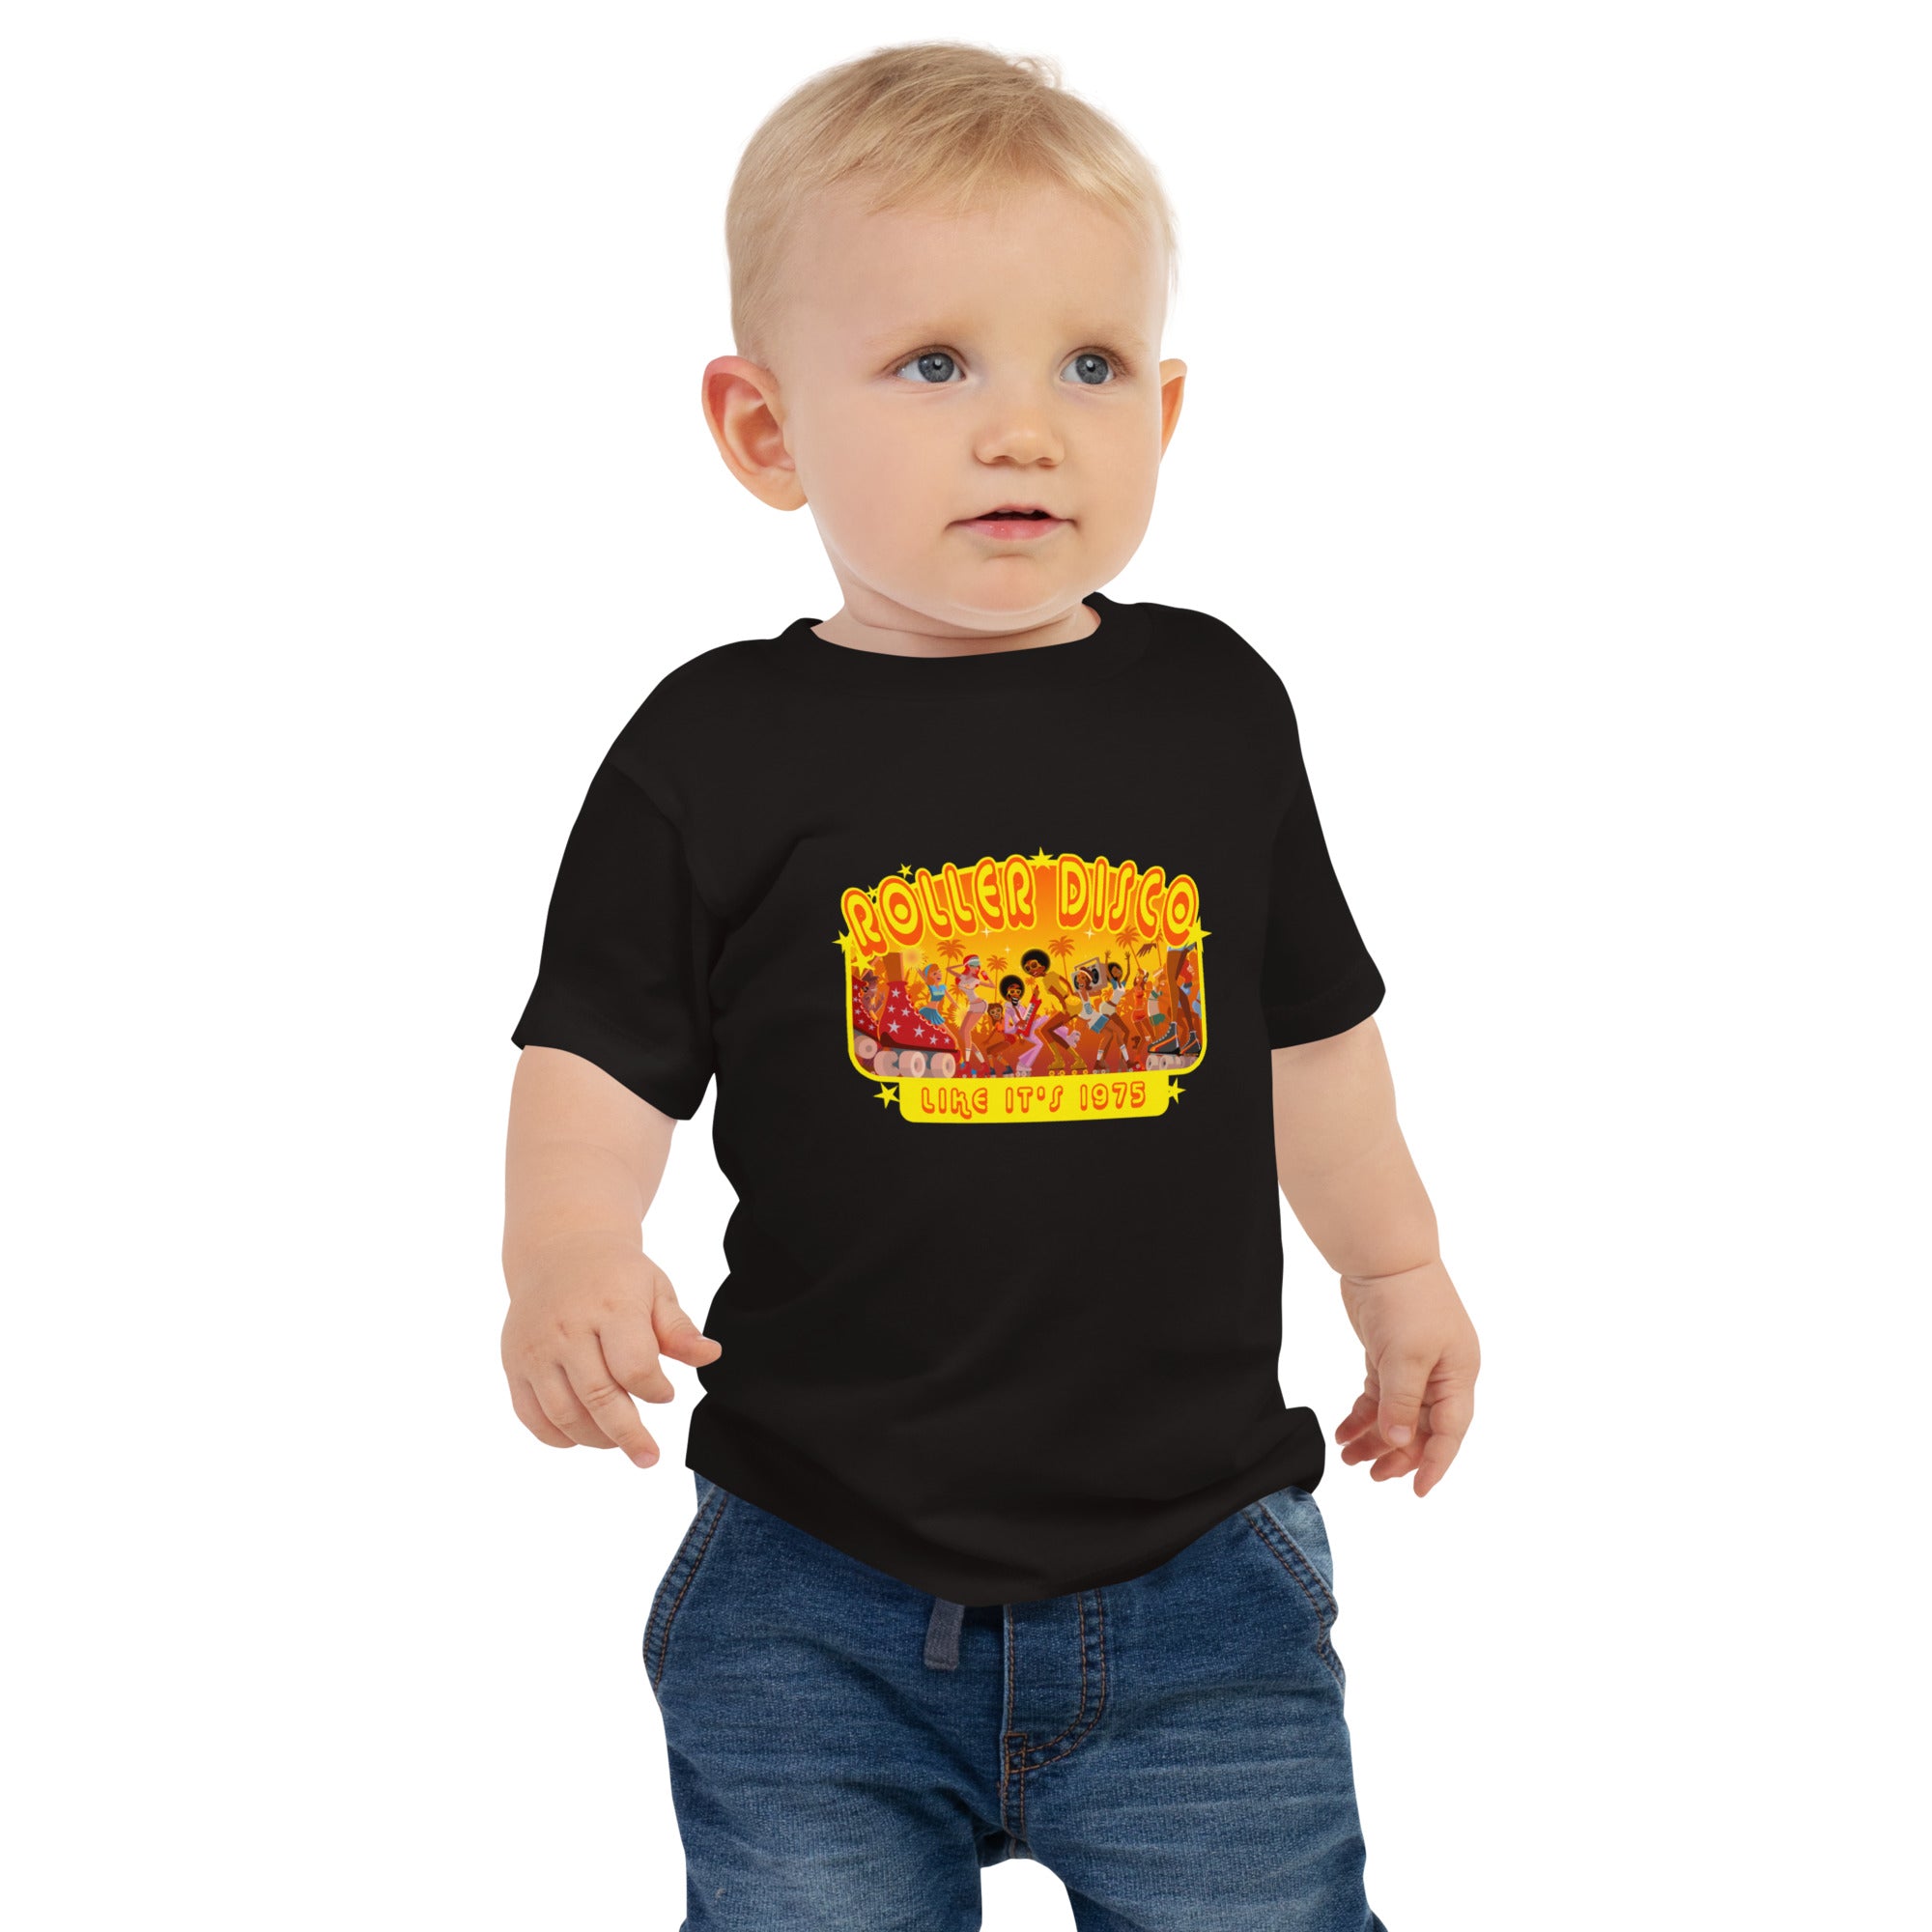 T-shirt pour bébé Roller Disco 1975